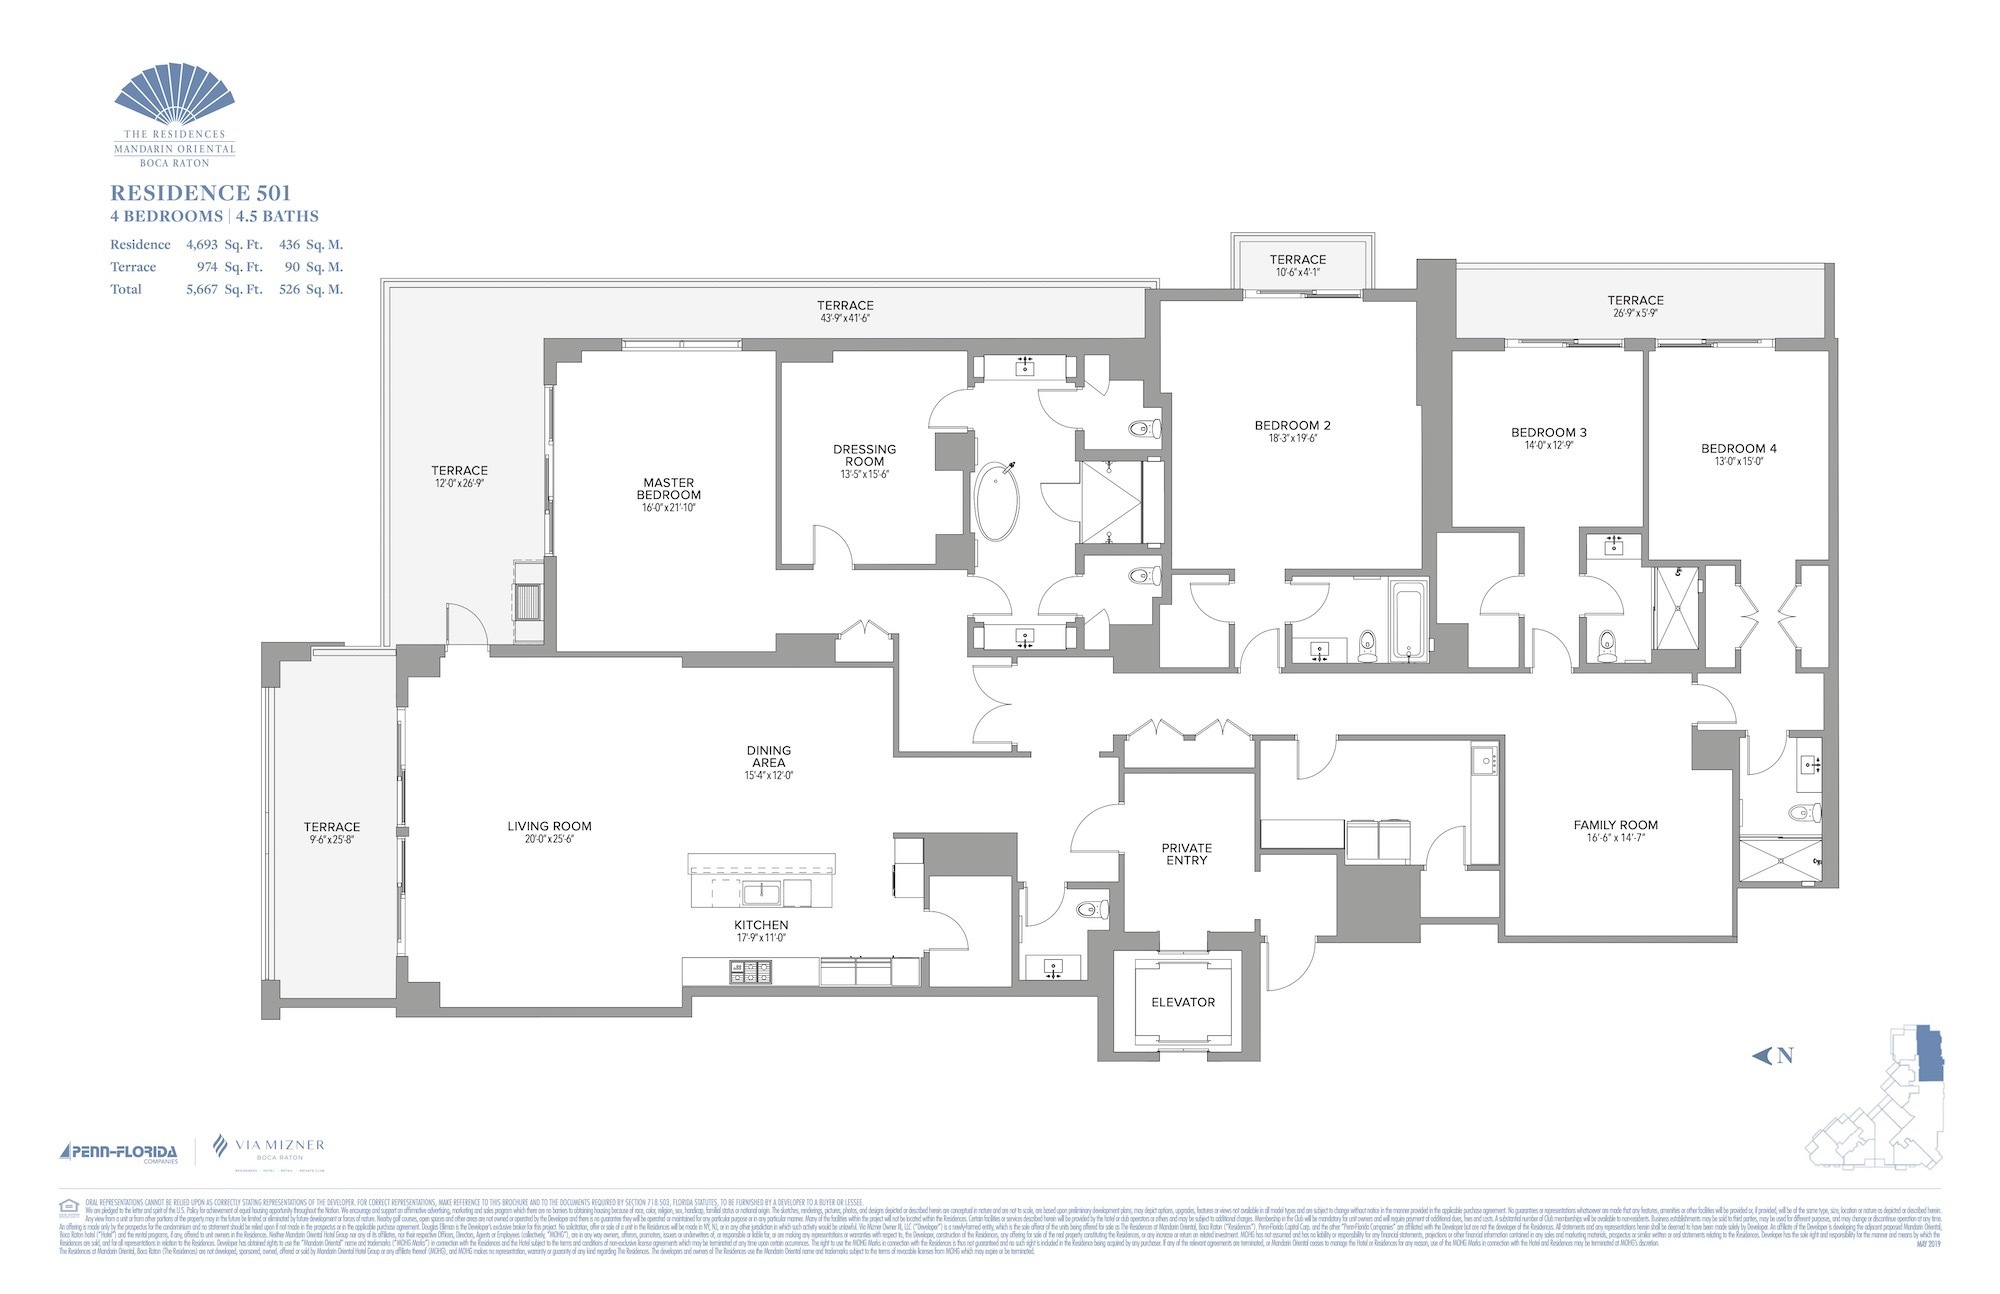 Floor Plan for Residence at Mandarin Oriental Floorplans, Residence 501